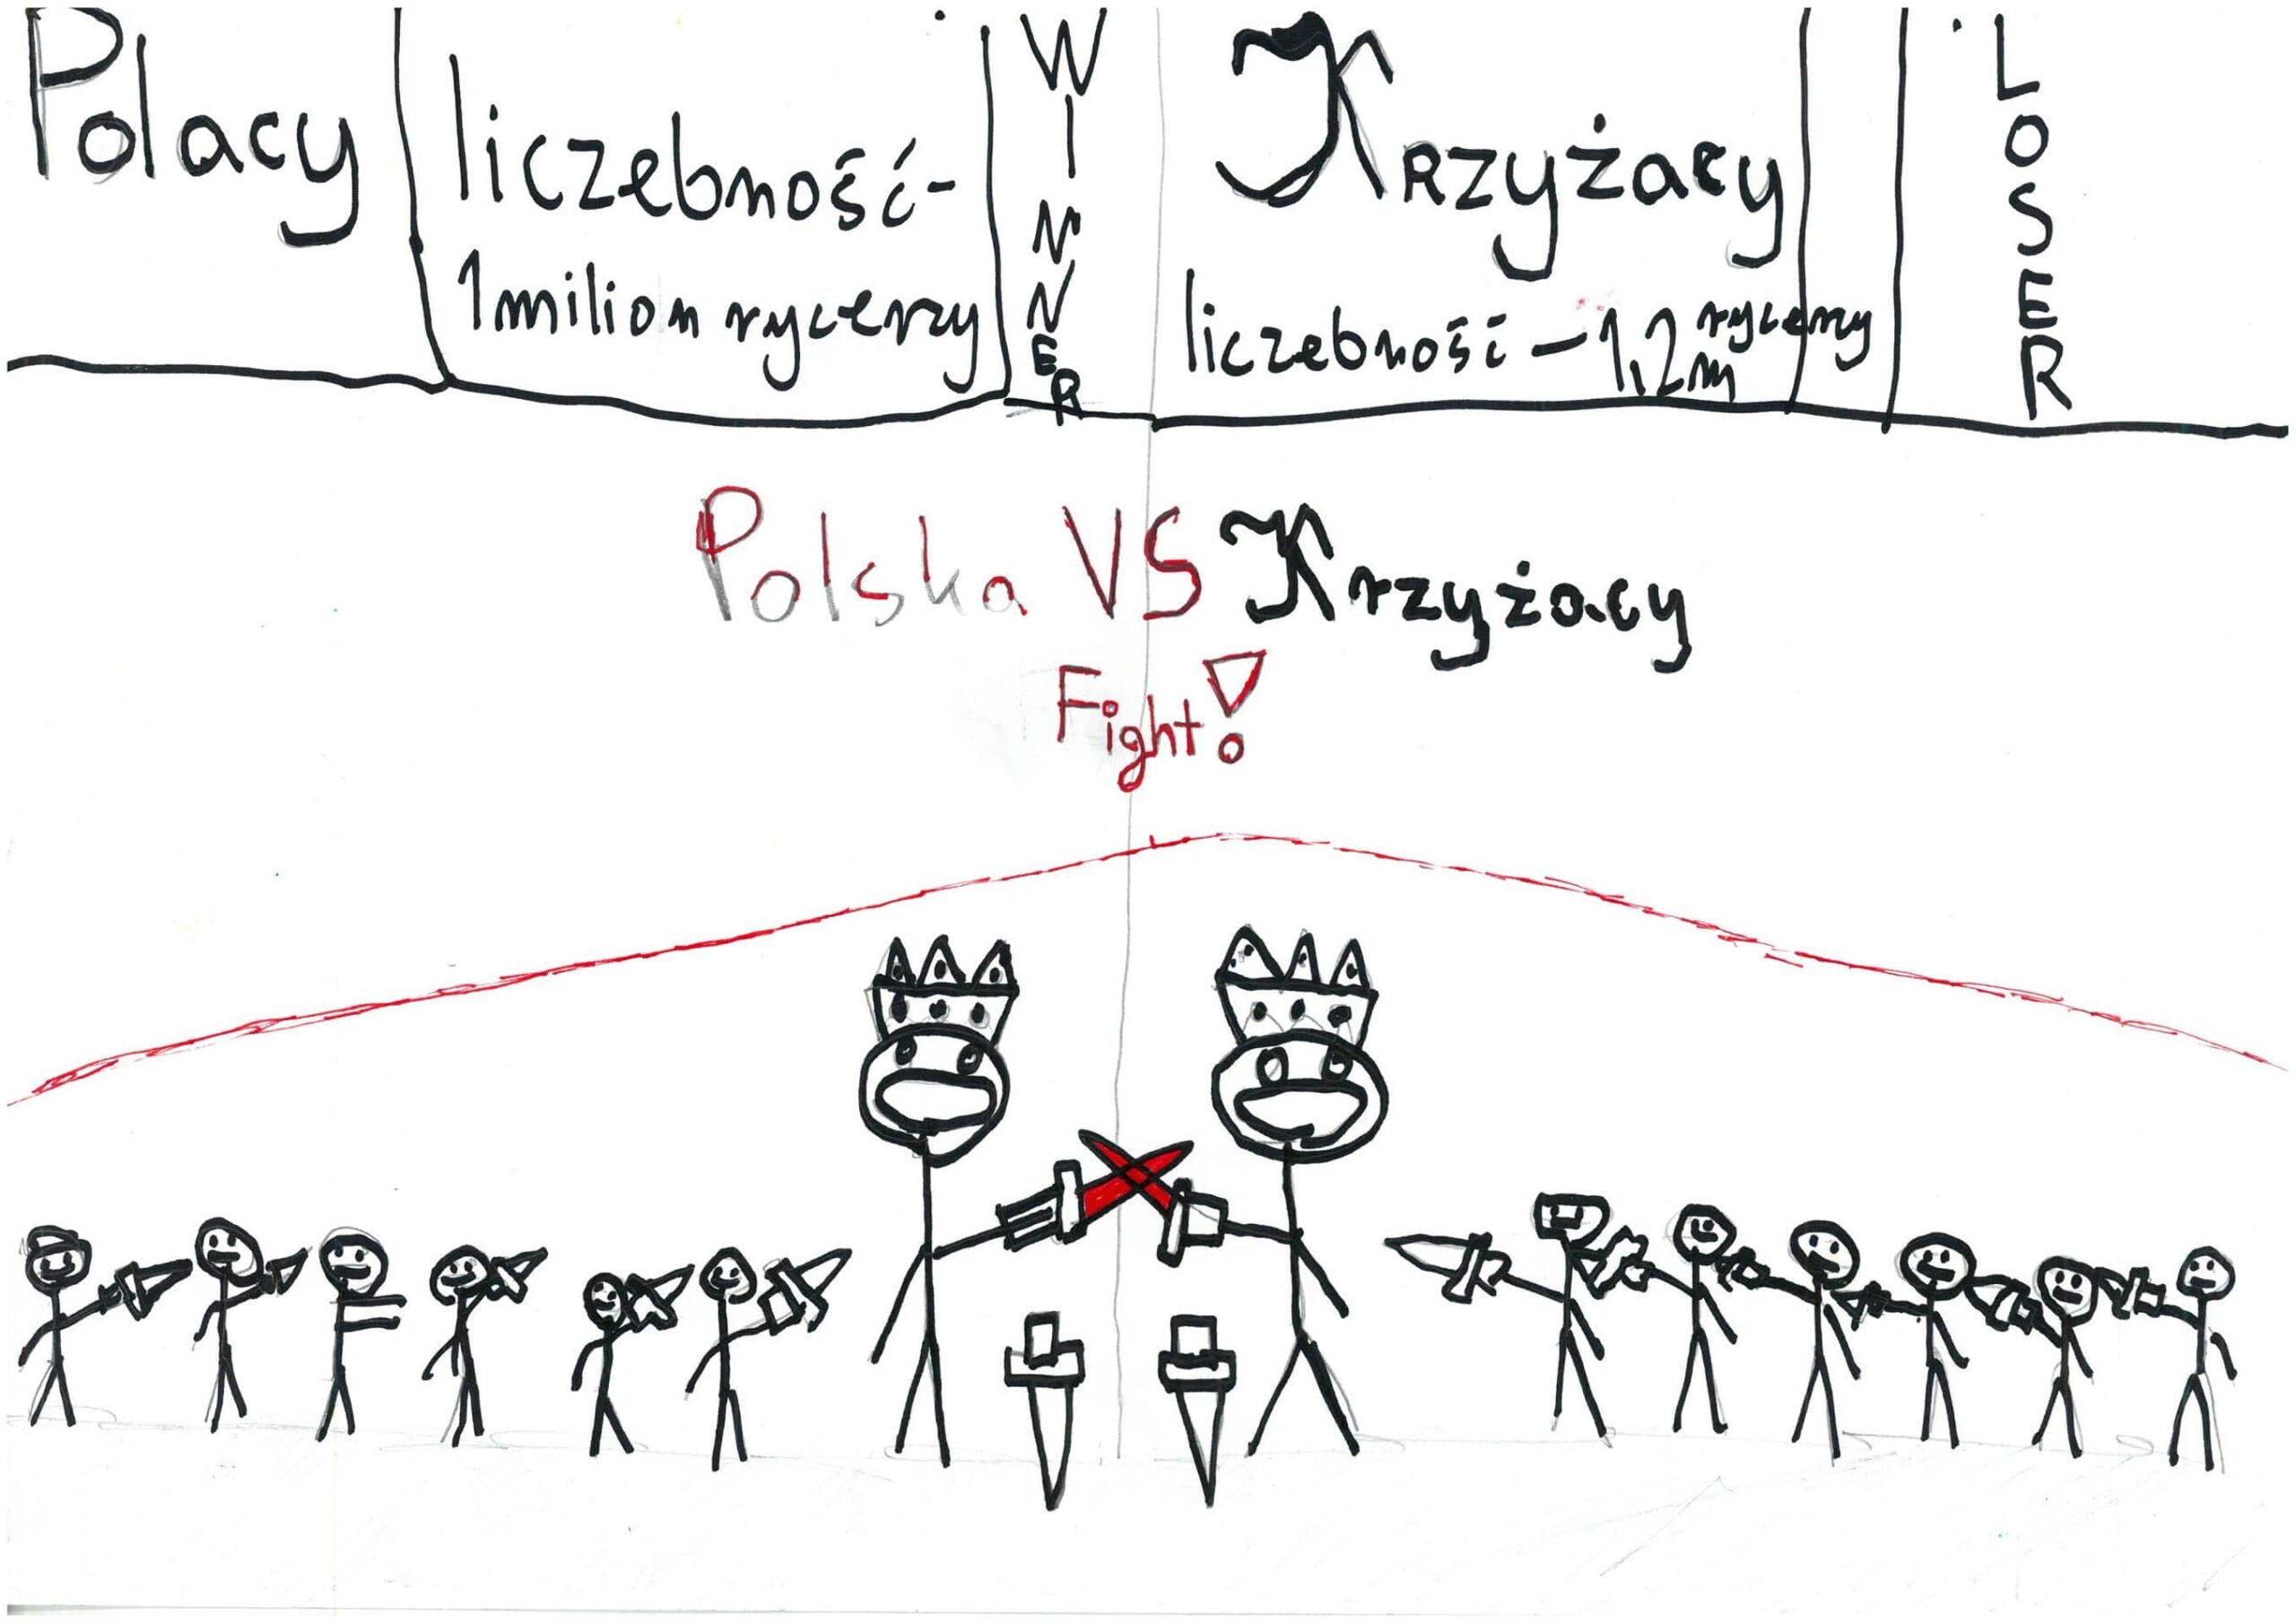 Na tej pracy widać pojedynek Polaków z krzyżakami, który wygląda jak kadr z gry komputerowej. Na górze w kilku prostokątach napisy: Polacy, liczebność – 1 milion rycerze, winner, Krzyżacy, liczebność – 1,2 m rycerzy, loser. Poniżej widać napis: Polska VS Krzyżacy, Fight!